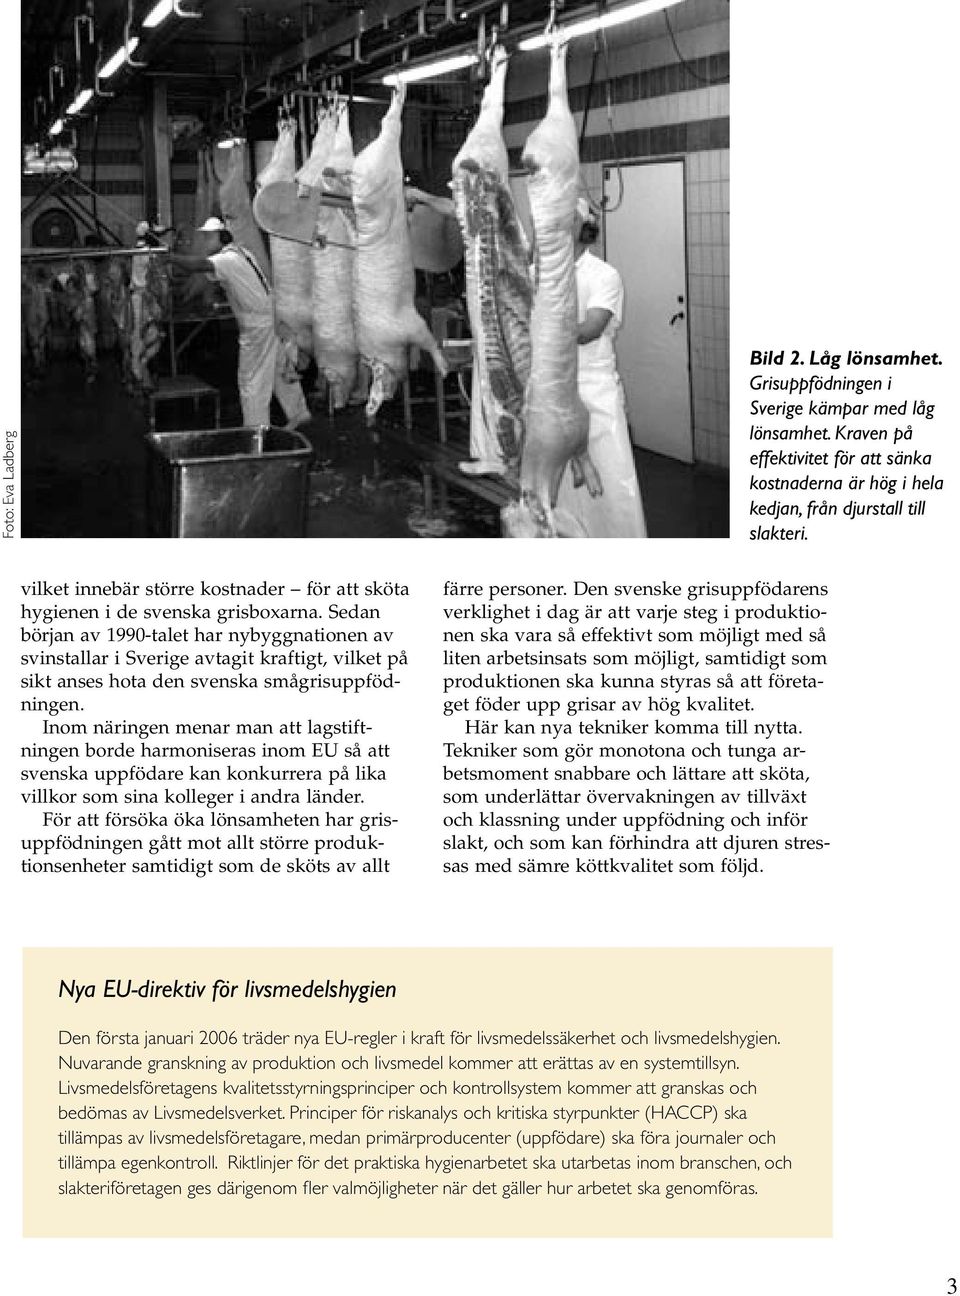 Sedan början av 1990-talet har nybyggnationen av svinstallar i Sverige avtagit kraftigt, vilket på sikt anses hota den svenska smågrisuppfödningen.